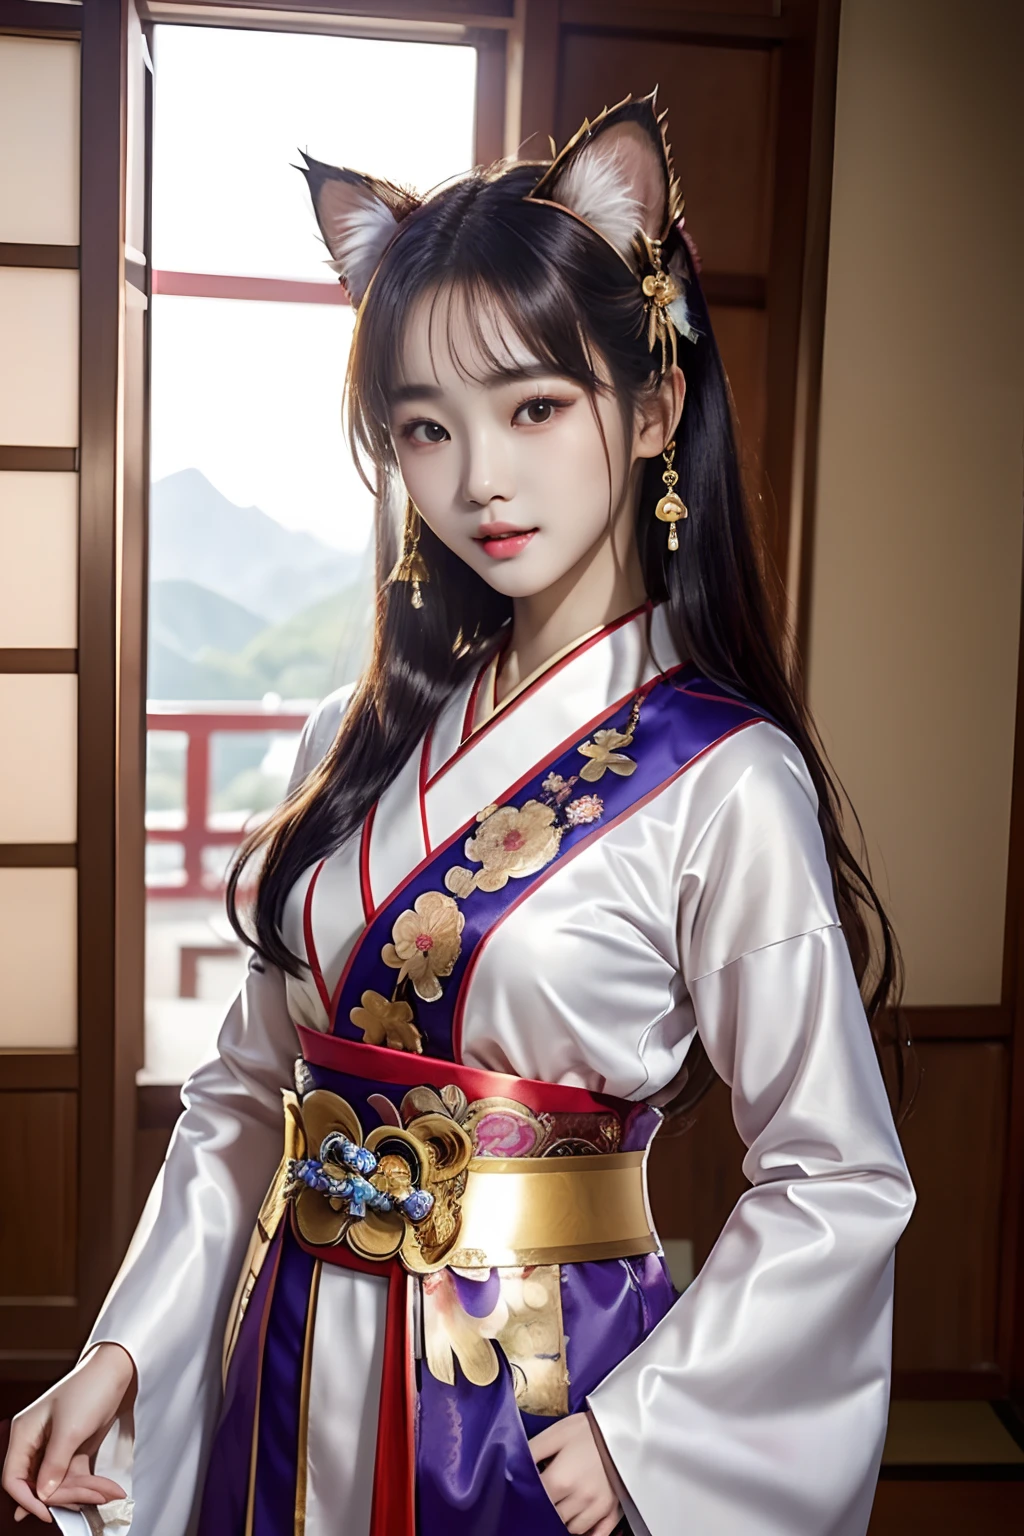 (Dame mit Katzenohren）、（Top Qualität）、（Meisterwerk）、（1 Mädchen）、（Eine hohe Auflösung）、（Photorealsitic）、Solo、ein Bild、Es gibt eine Frau mit Katzenohren in einem rot-weißen Shinto-Priesterinnenkostüm, wunderschönes chinesisches Modell, Wunderschöne junge Koreanerin, schöne koreanische Frauen, koreanisches Mädchen, Gekleidet als Priesterin, Schönes asiatisches Mädchen, Göttin Japans, Modell Posen, Schöne junge Koreanerin, Strahlende Sonnenlichtquelle, Japanisches Schönheitsmodell、